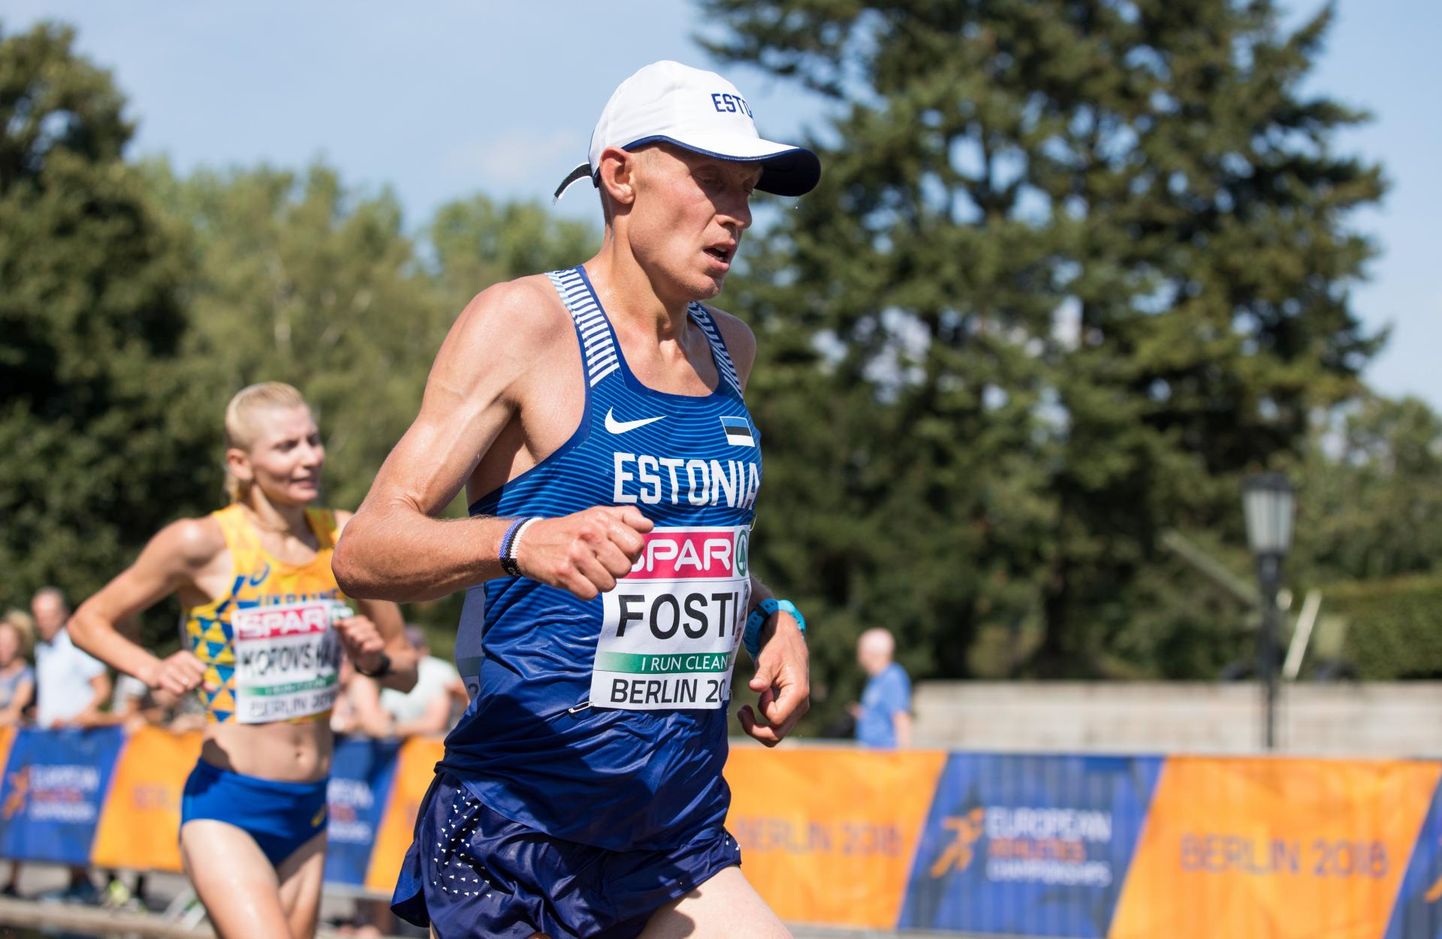 Roman Fosti läbis kergejõustiku- EMi maratoniraja isikliku rekordi lähedase ajaga, mis andis tugevas konkurentsis 17. koha.